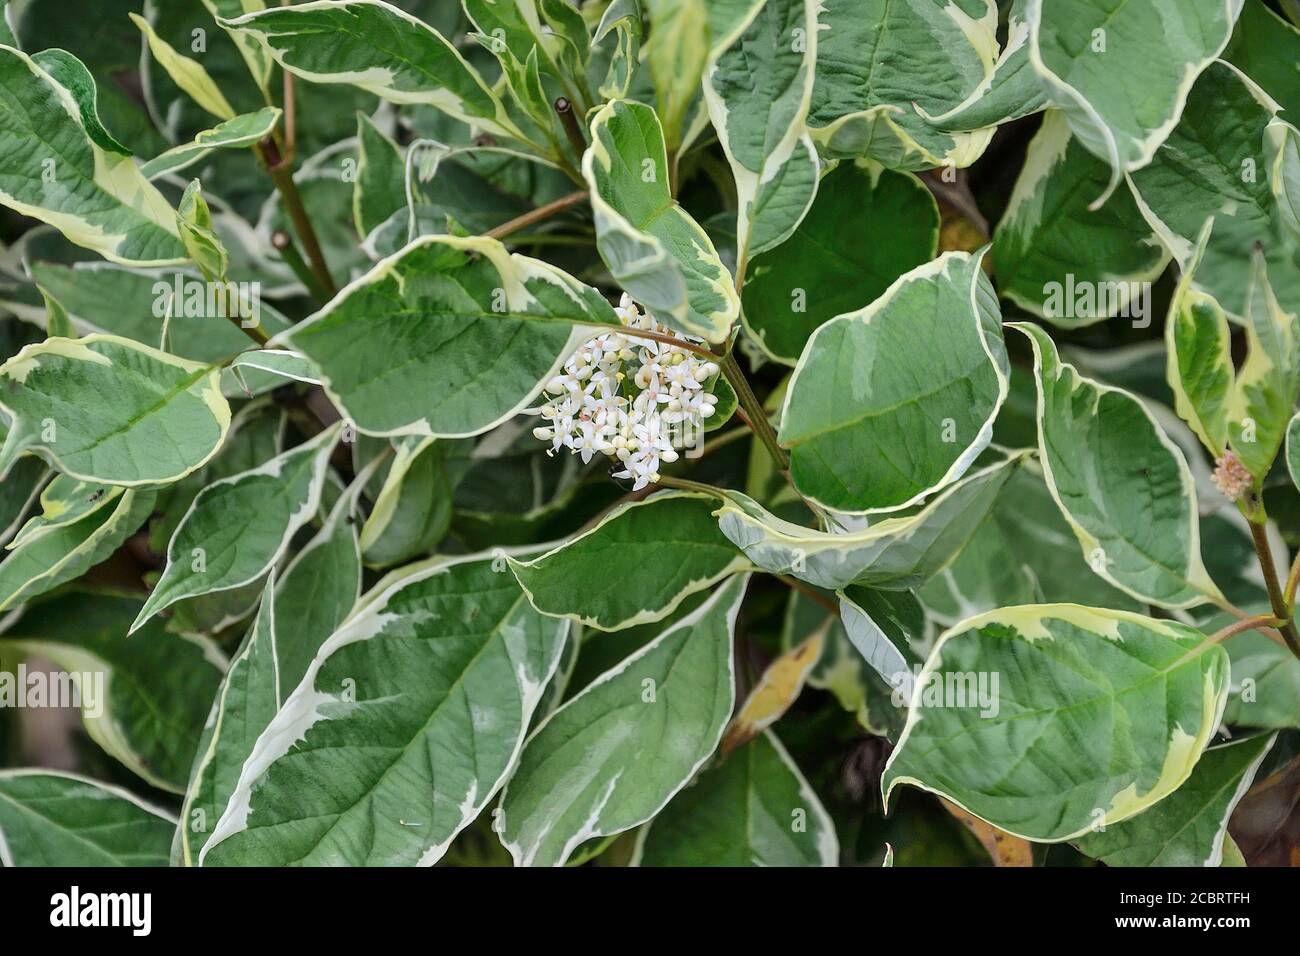 Foglie e fiori di arbusto ornamentale variegato legno di Dogwood (Cornus alba siderica variegata) primo piano. Cespuglio decorativo con fogliame variegato - bianco b Foto Stock